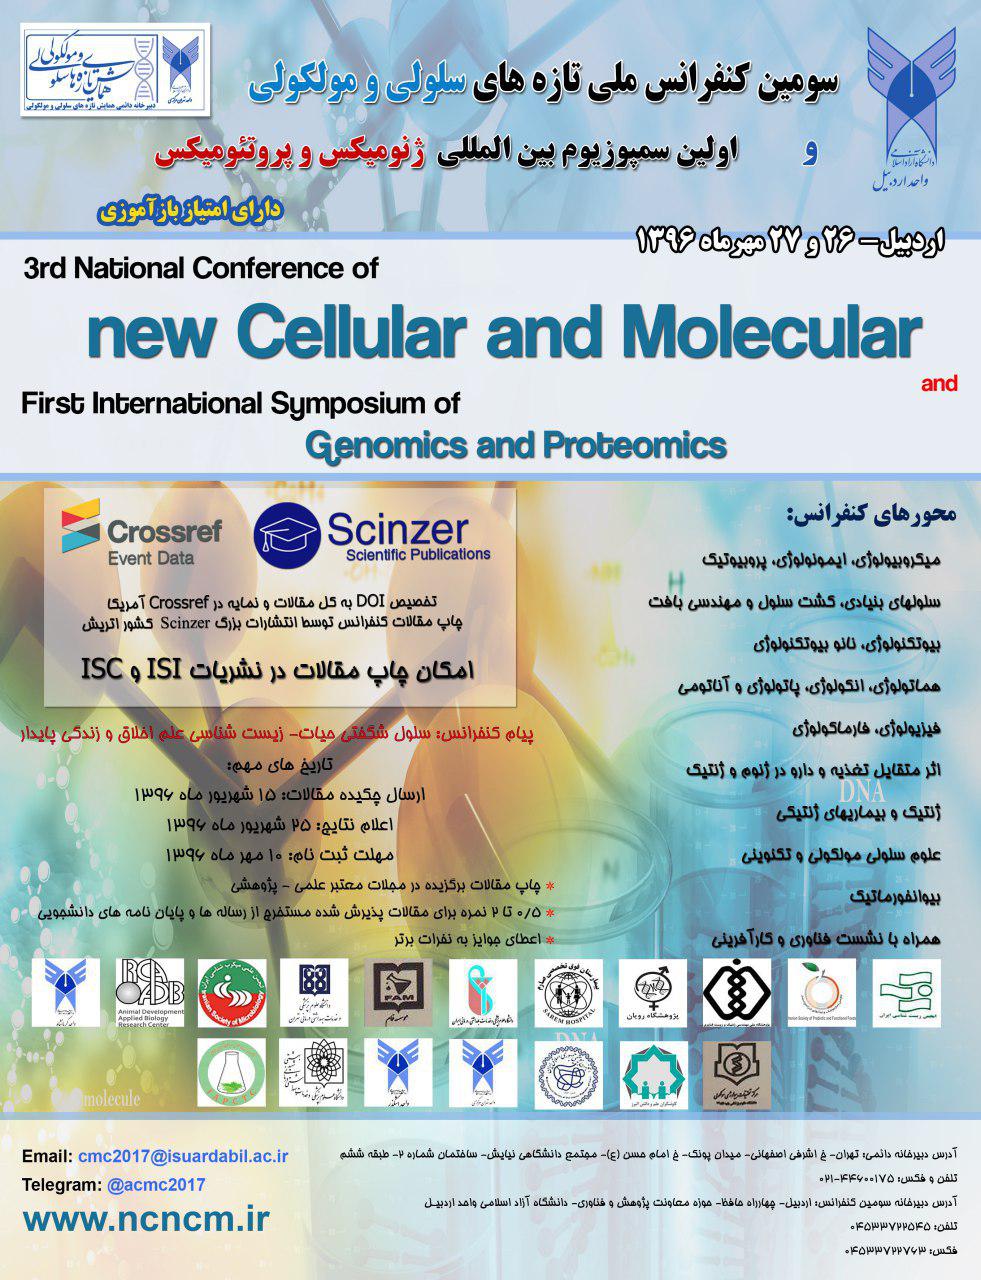 پوستر سومین کنفرانس تازه های سلولی و مولکولی و اولین سمپوزیوم بین المللی ژنومیکس و پروتئومیکس